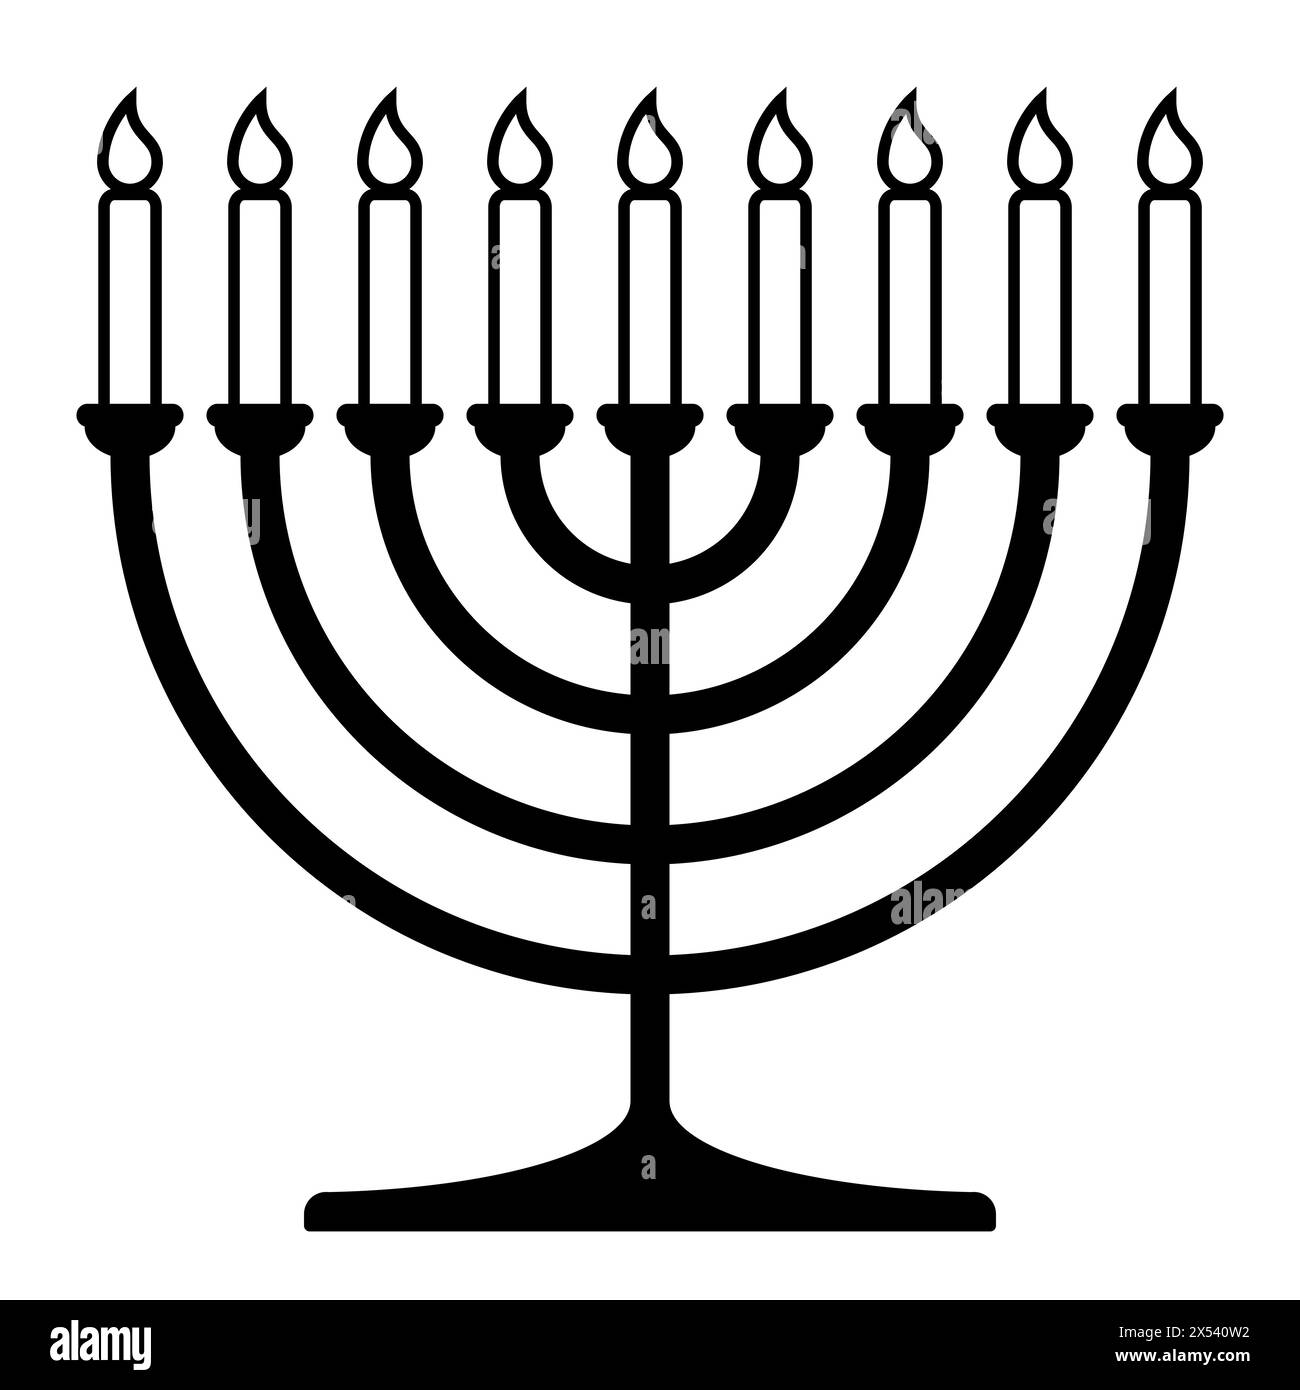 Hanukkah Menora, schwarz-weiße Vektor-Silhouette Illustration von Hanukkiah neun-verzweigten Kerzenleuchtern mit Kerzen Stock Vektor